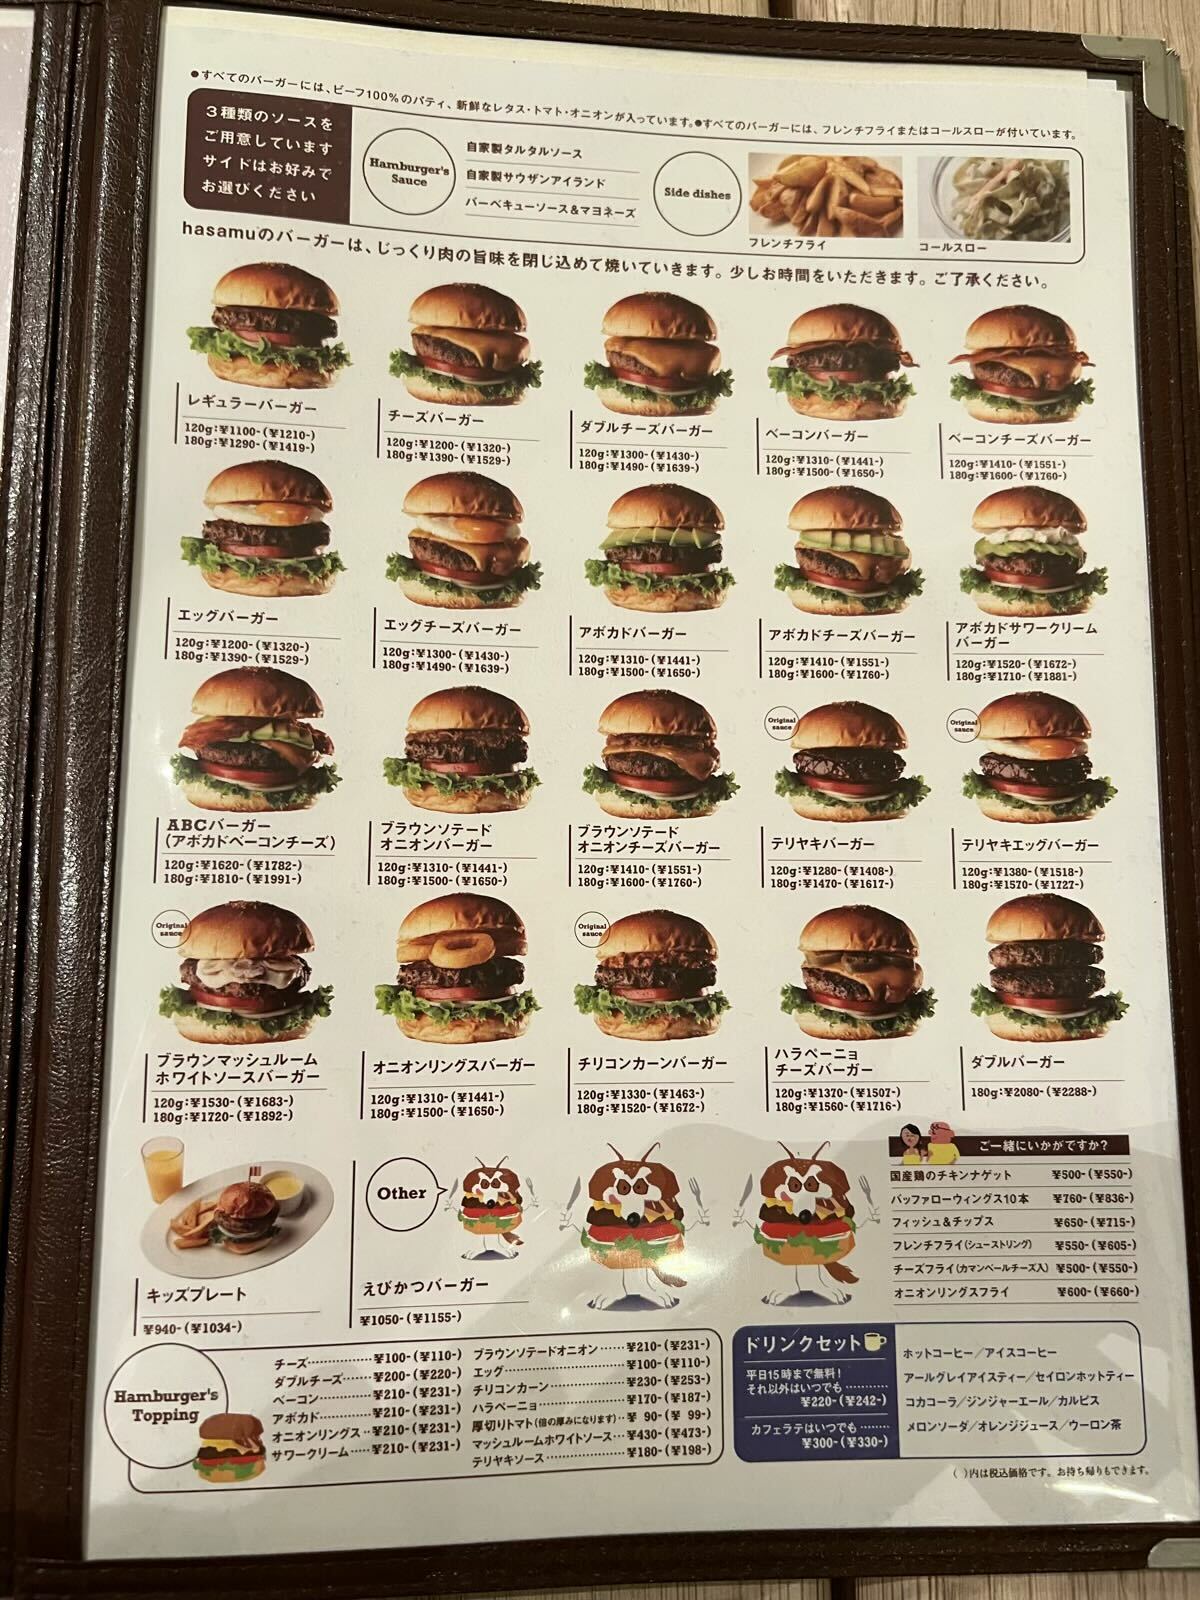 ハンバーガーの種類は20種類以上